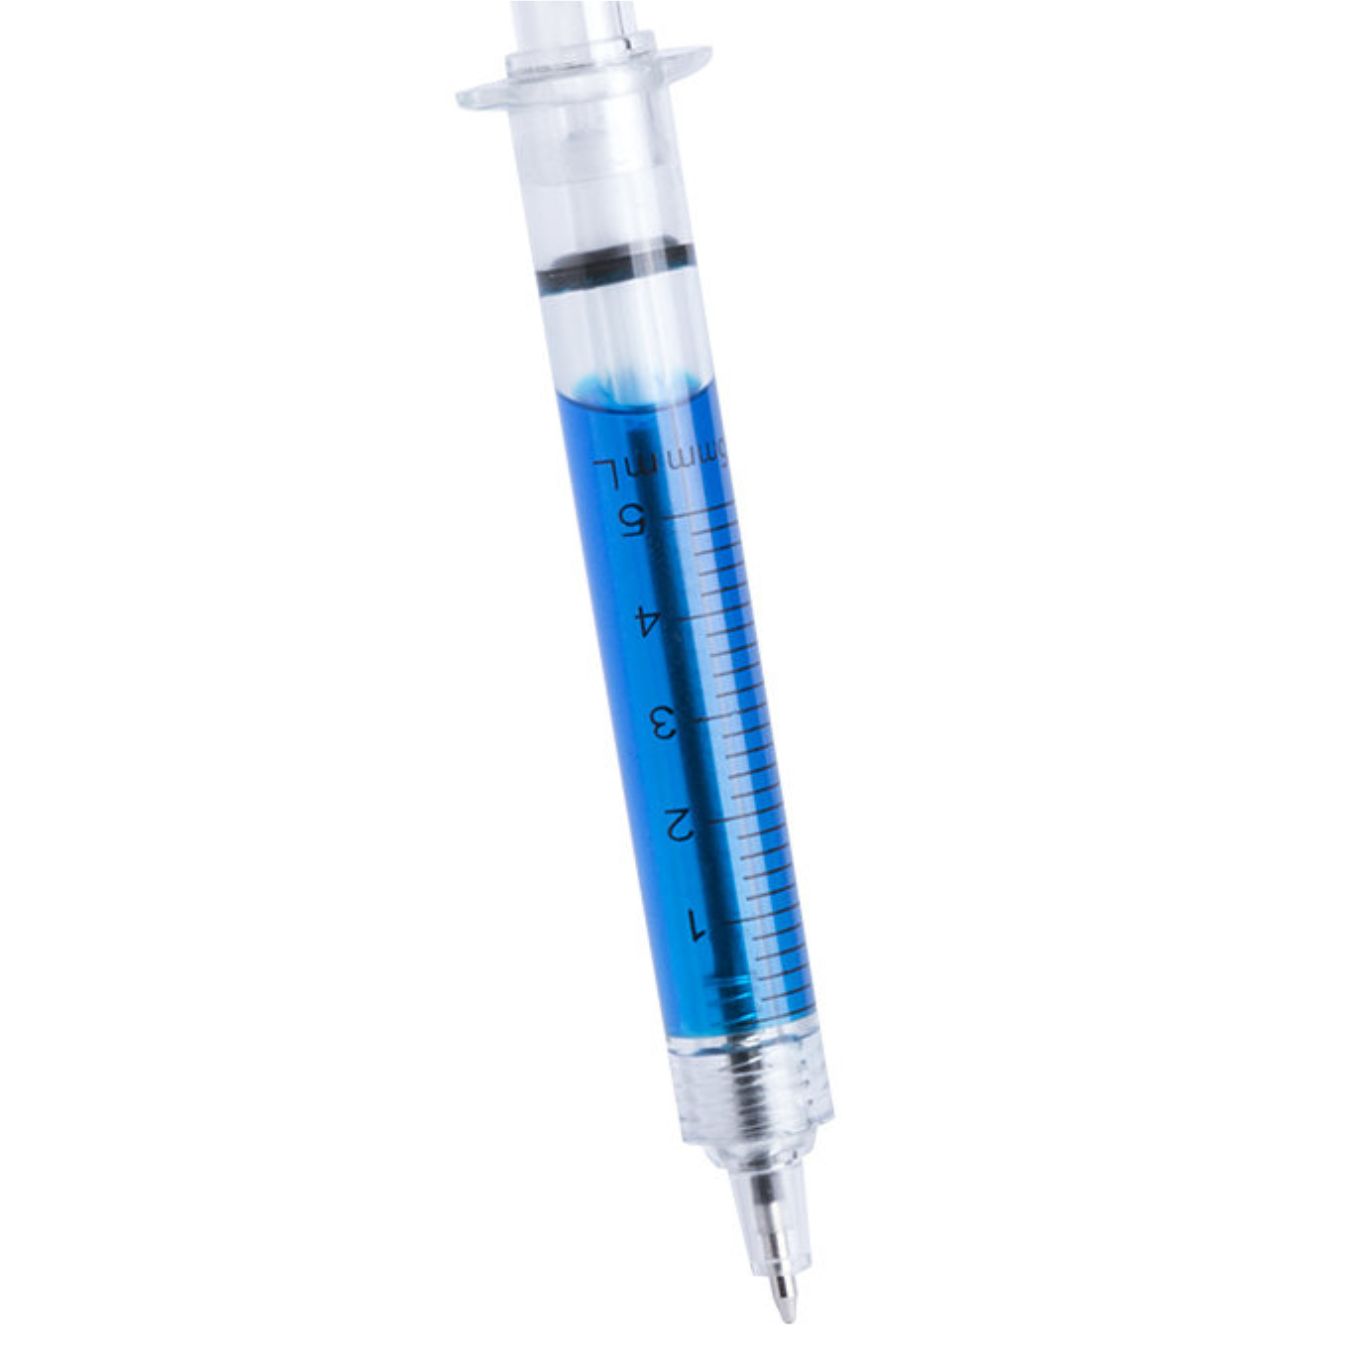 ручки в виде шприца с жидкостью